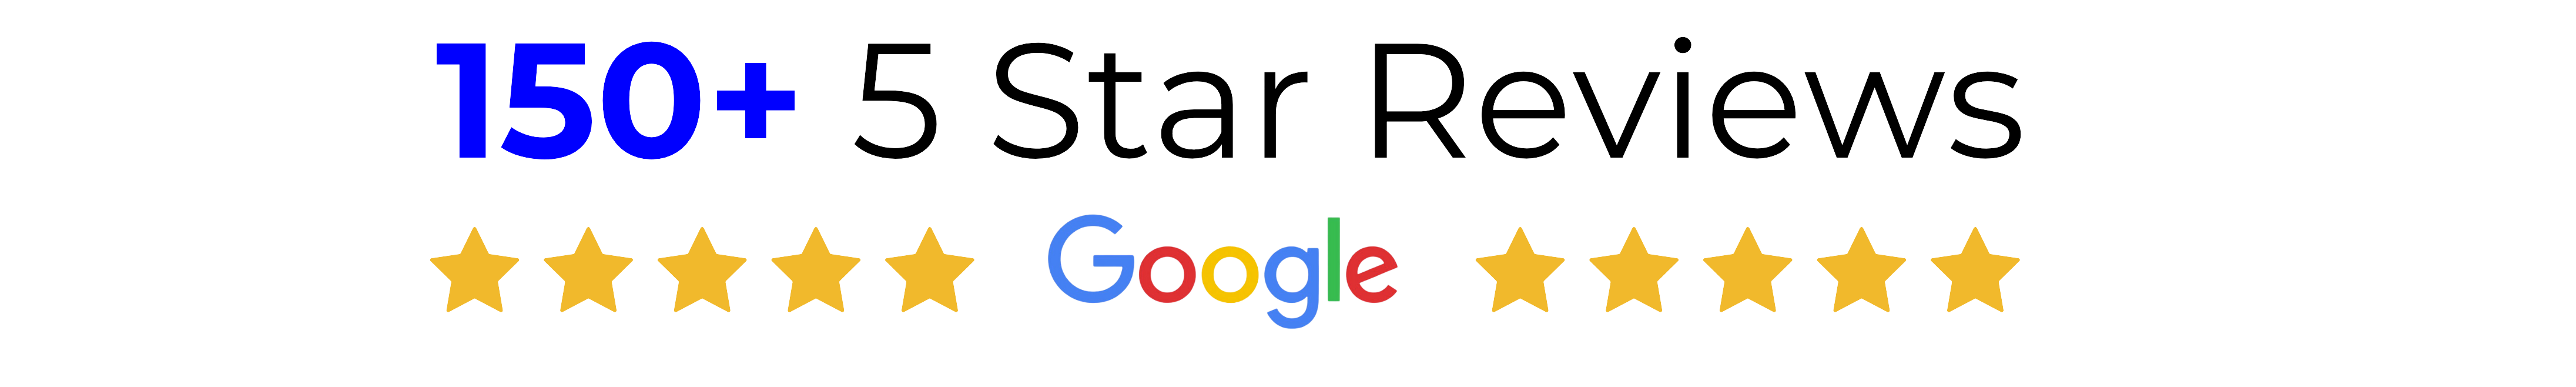 5 Star Google Reviews or Ratings